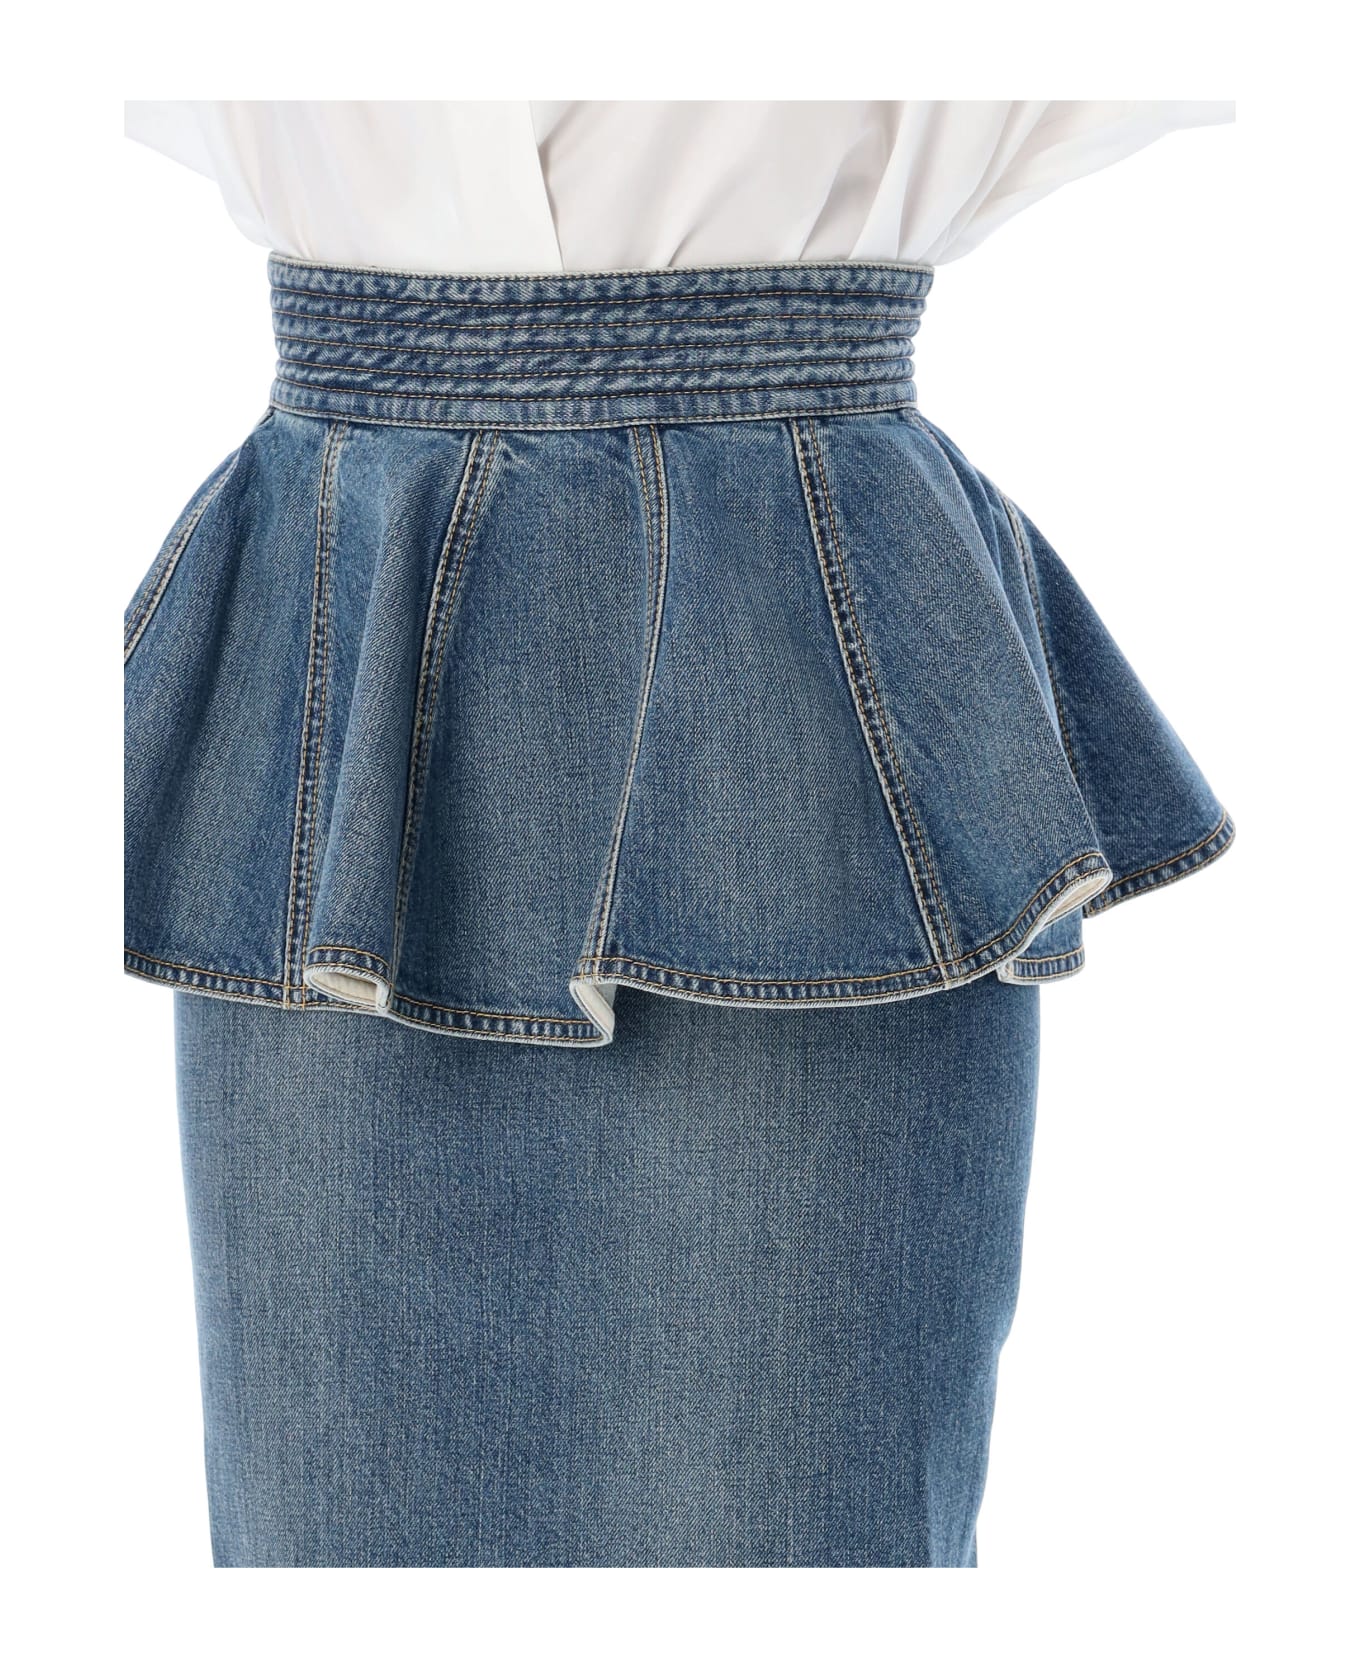 Alaia Denim Skirt Belt - LIGHT BLUE